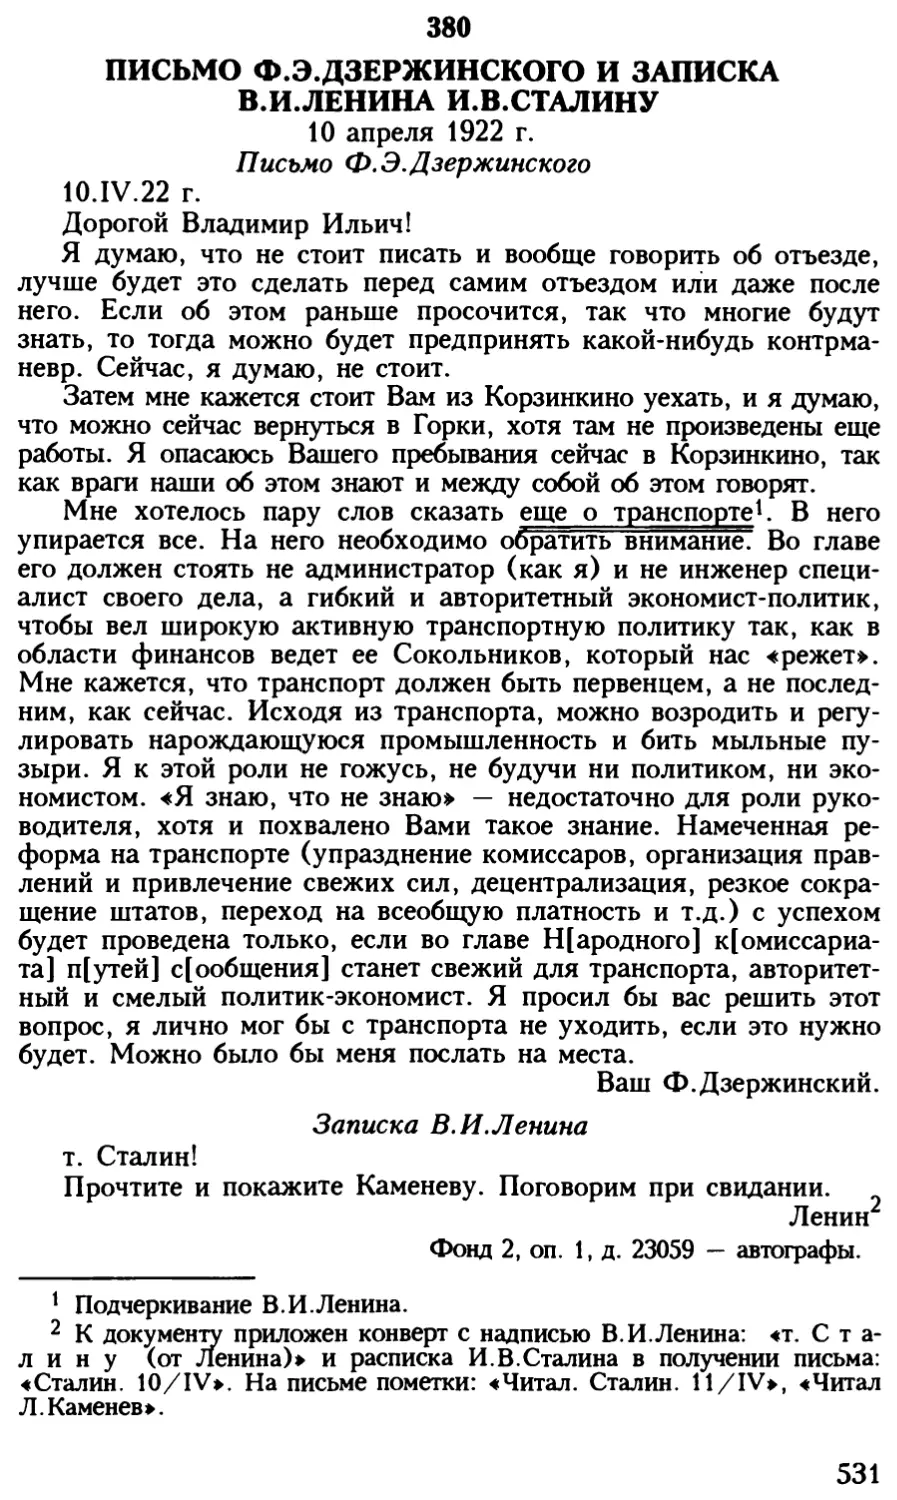 380. Письмо Ф.Э.Дзержинского и записка В.И.Ленина И.В.Сталину. 10 апреля 1922 г